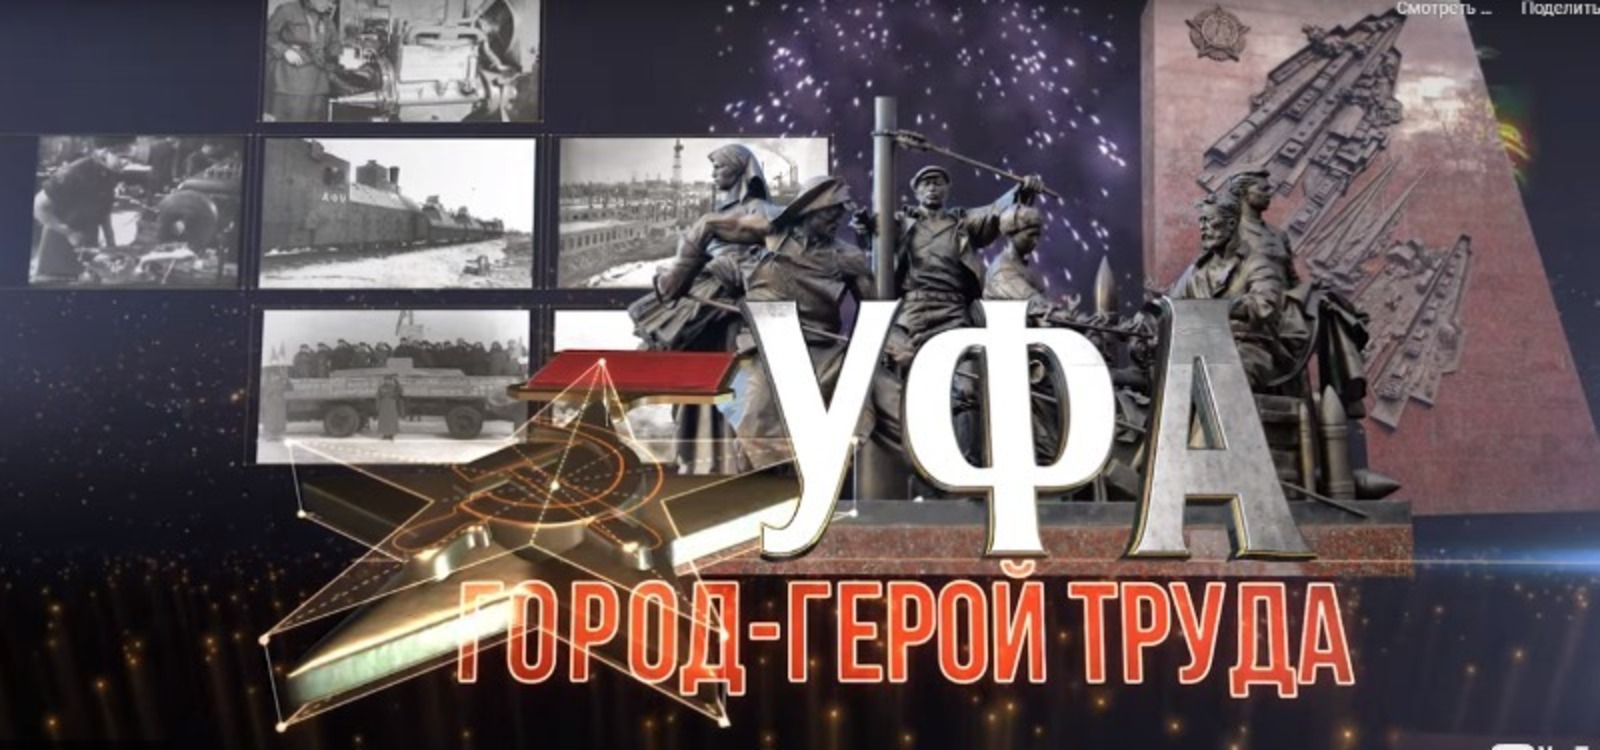 На БСТ пройдёт премьера фильма «Уфа – город-герой труда»